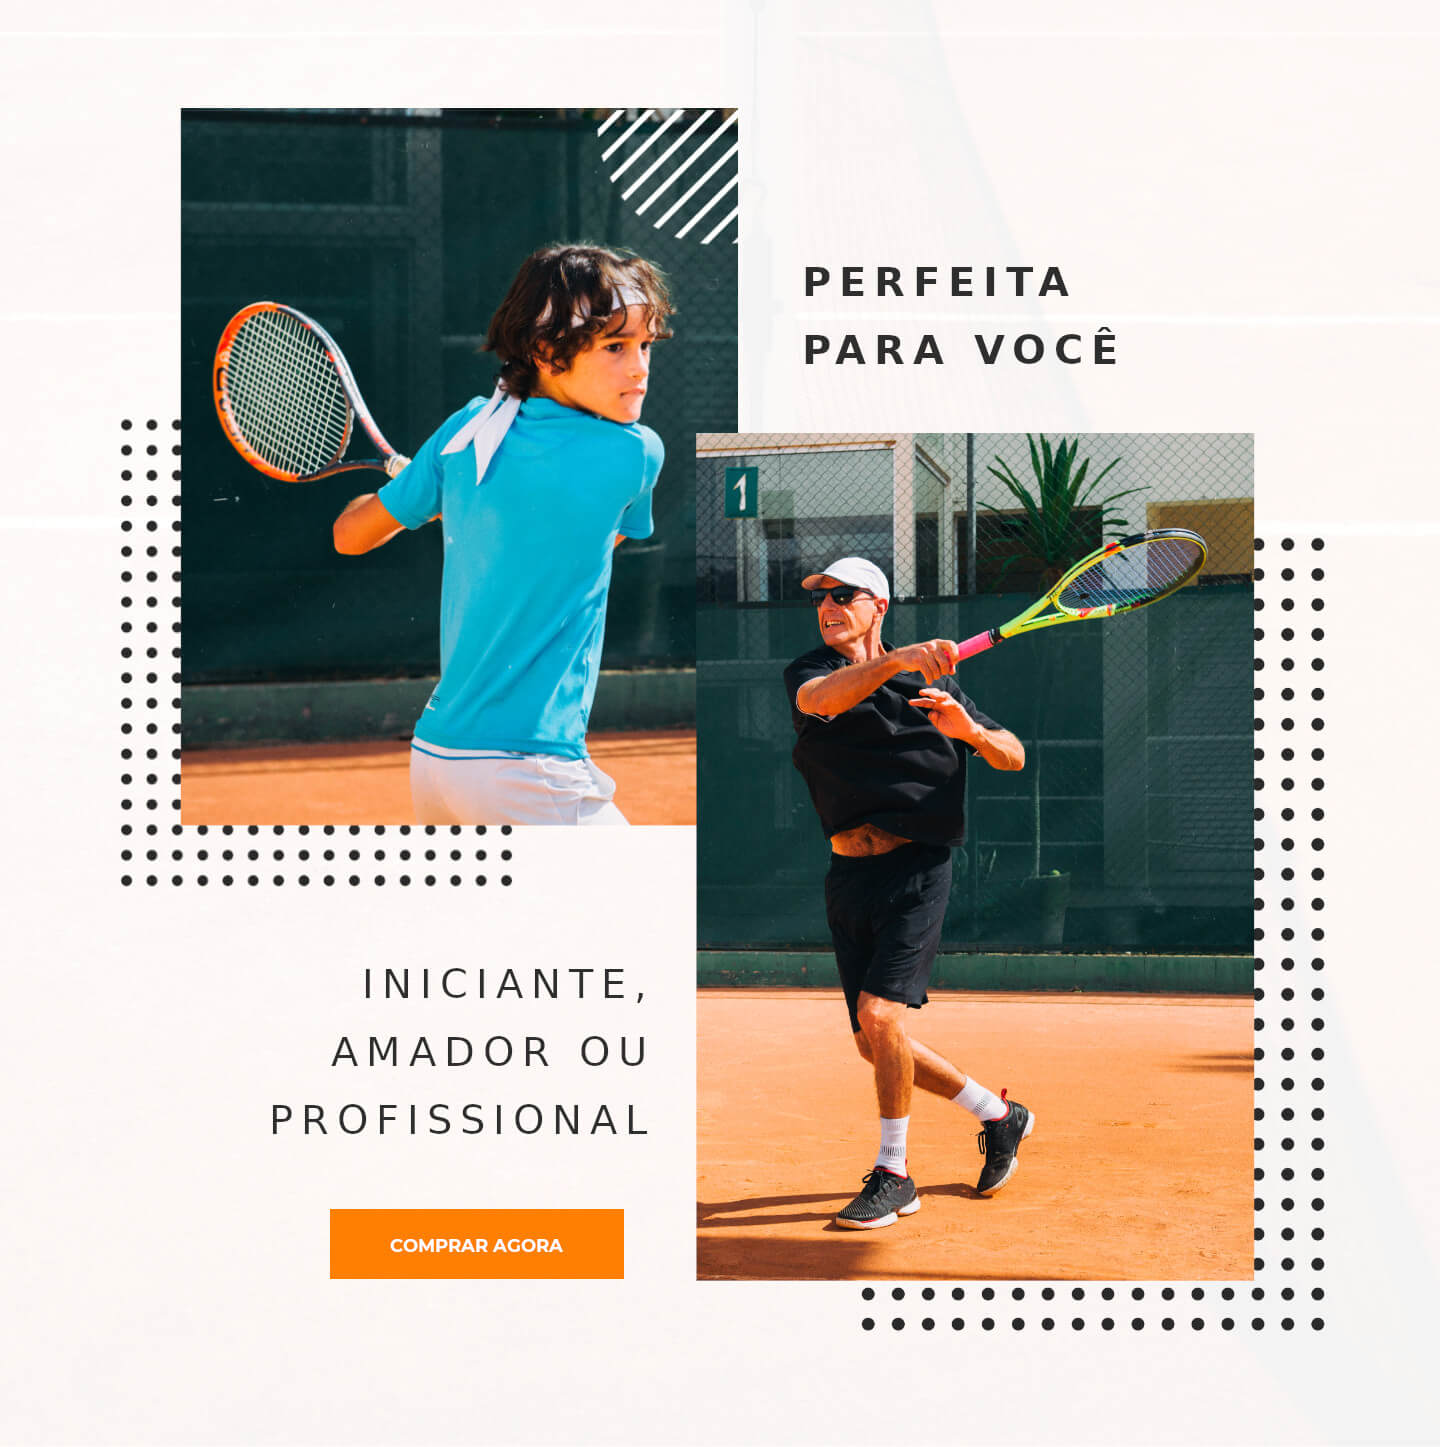 jovem tenista João Pedro do lado esquerdo, tenista Renato Pereira do lado direito, com os dizeres: Perfeita para você, iniciante, amador ou profissional.